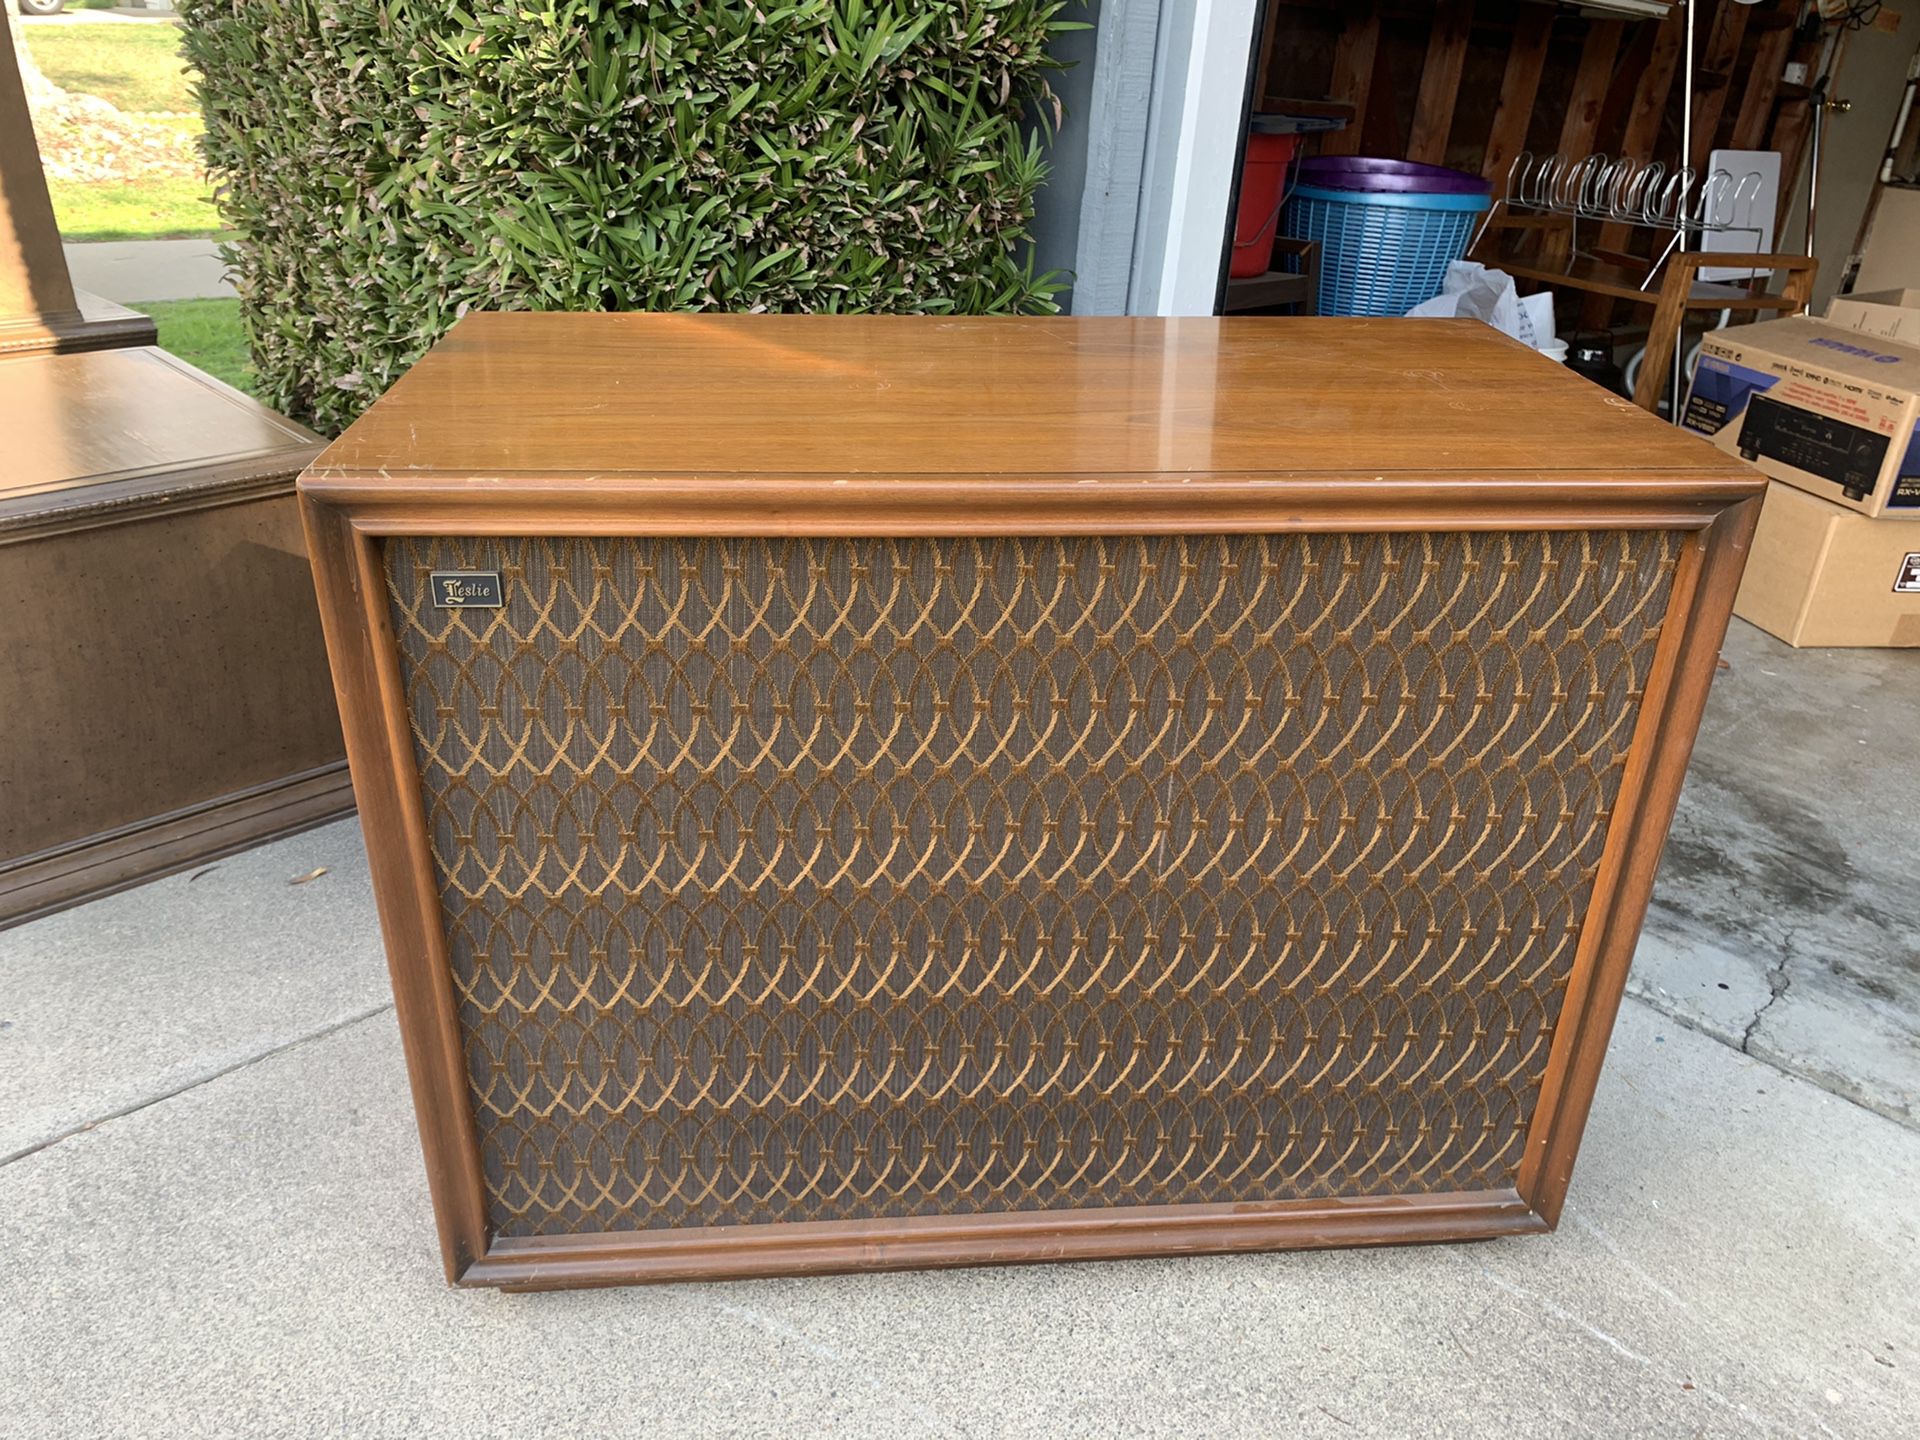 Vintage Leslie speaker/antique original furniture item